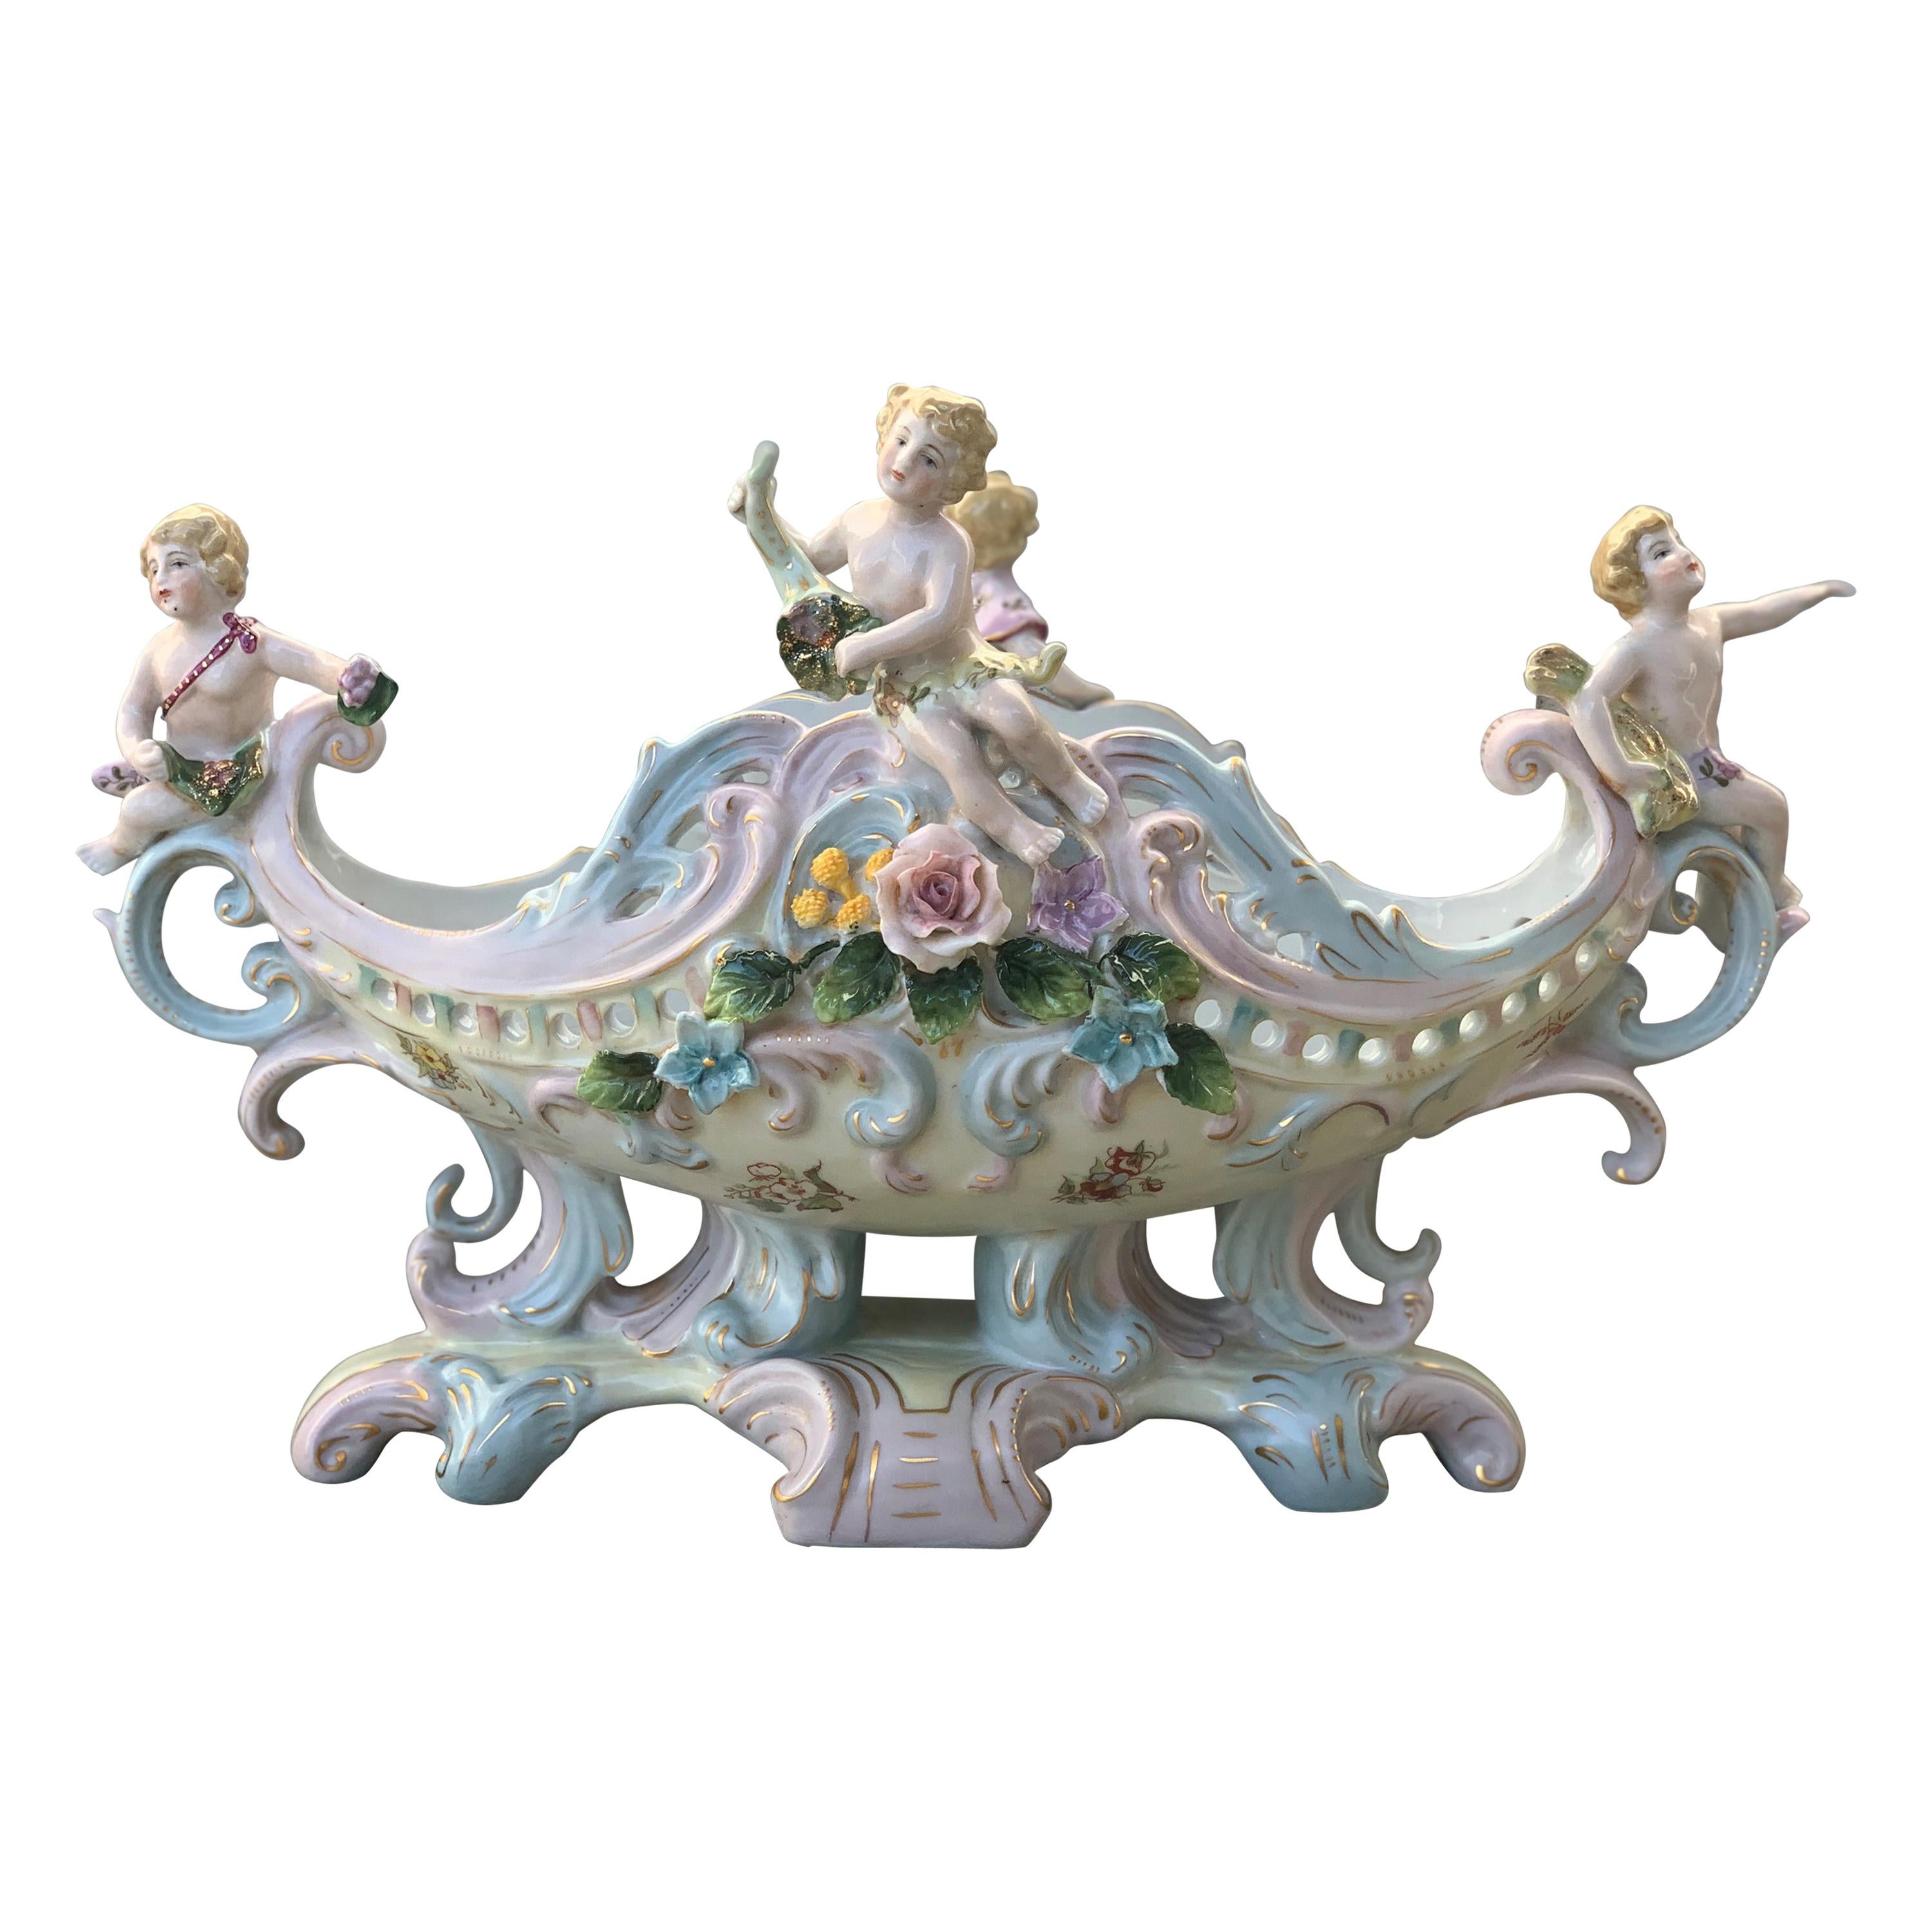 Rococó Porcelain Figural Cherub Jardinière or Centerpiece Bowl by Meissen